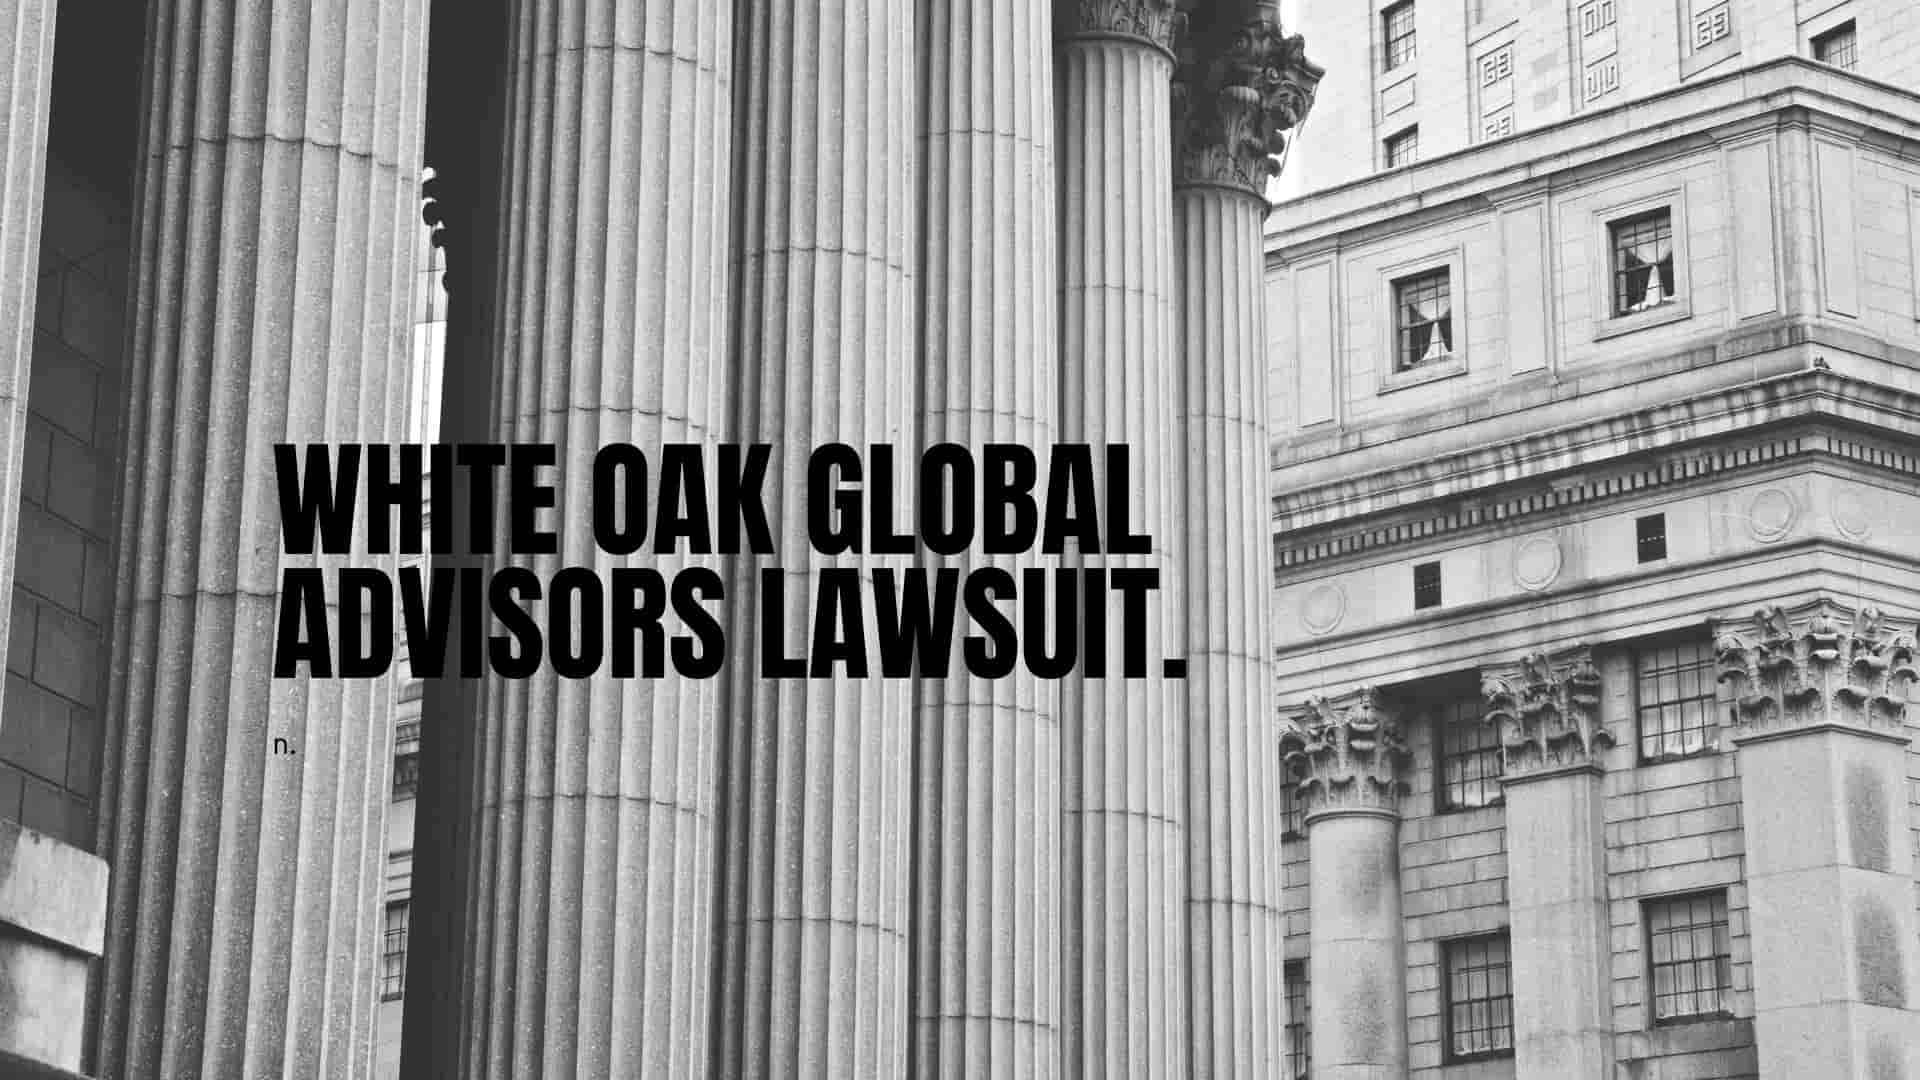 _White Oak Global Advisors Lawsuit